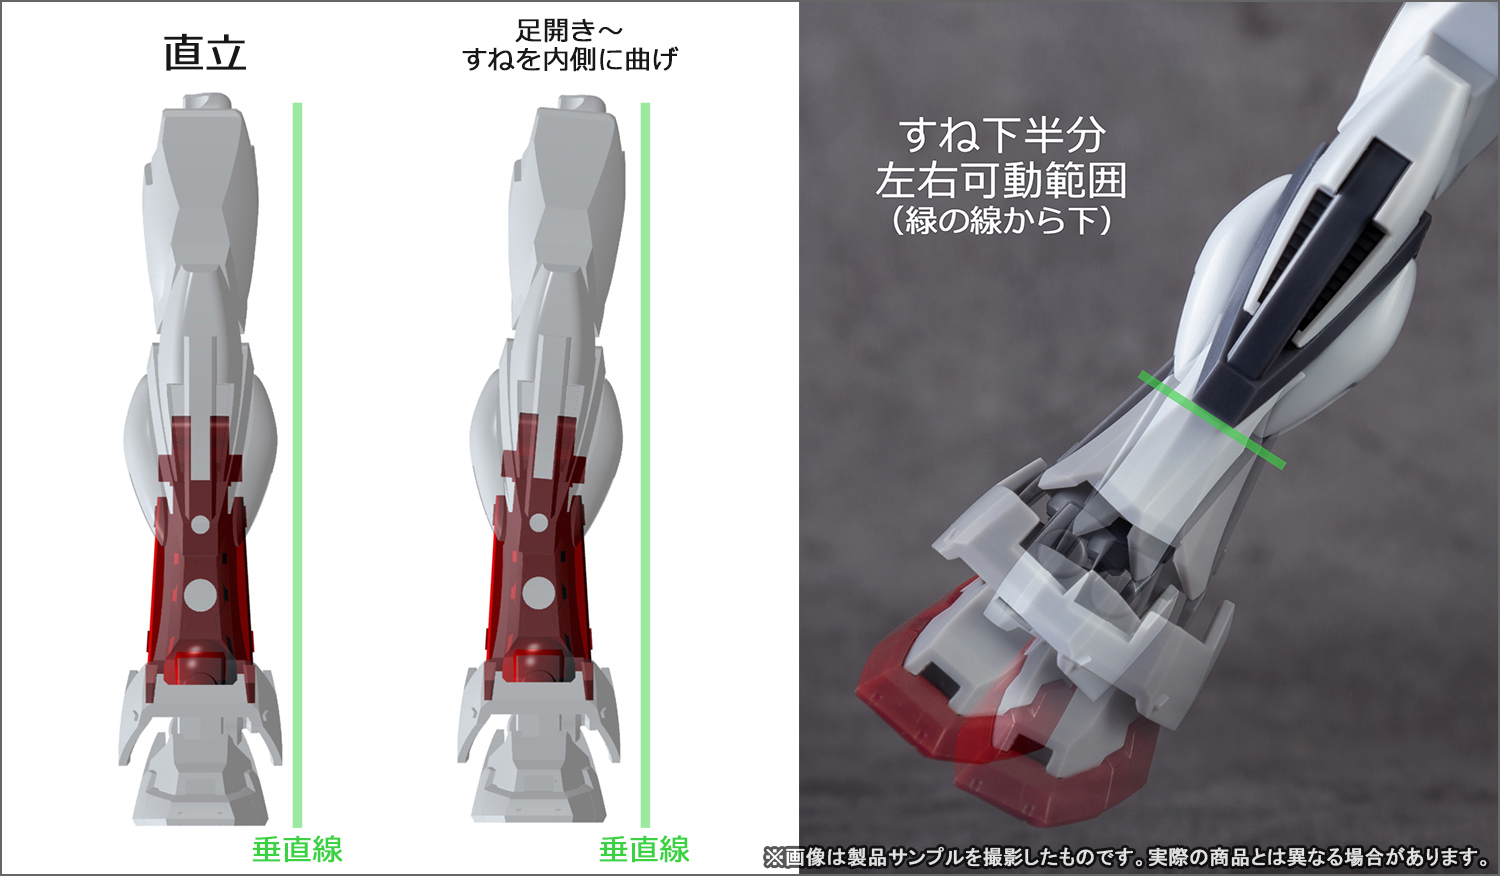 Imagen de "ROBOT SPIRITS <SIDE MS> Strike Gundam ver. A.N.I.M.E."